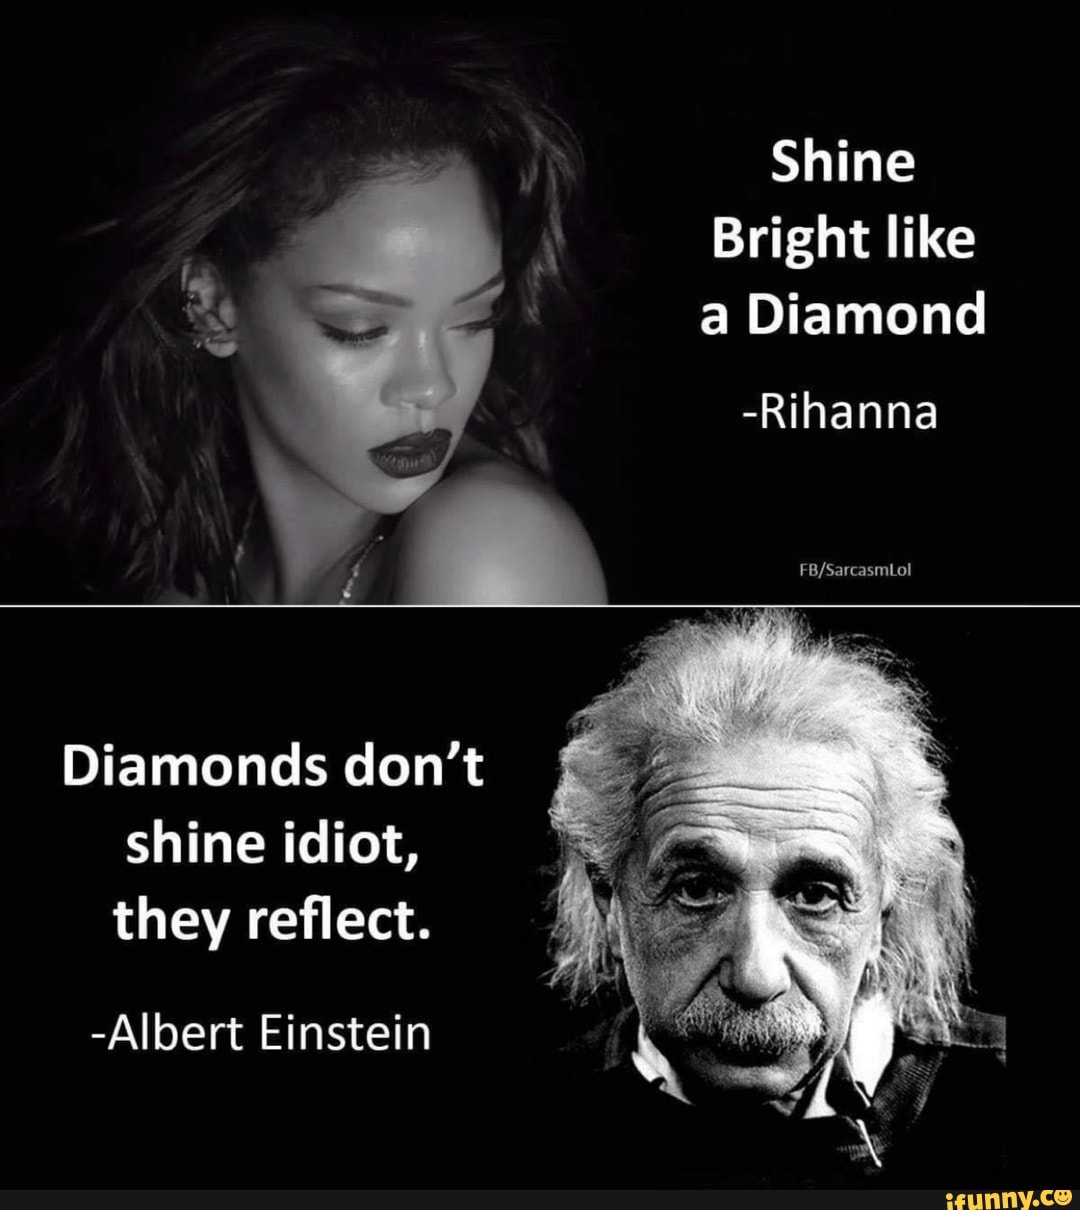 rihanna shine bright like a diamond meme